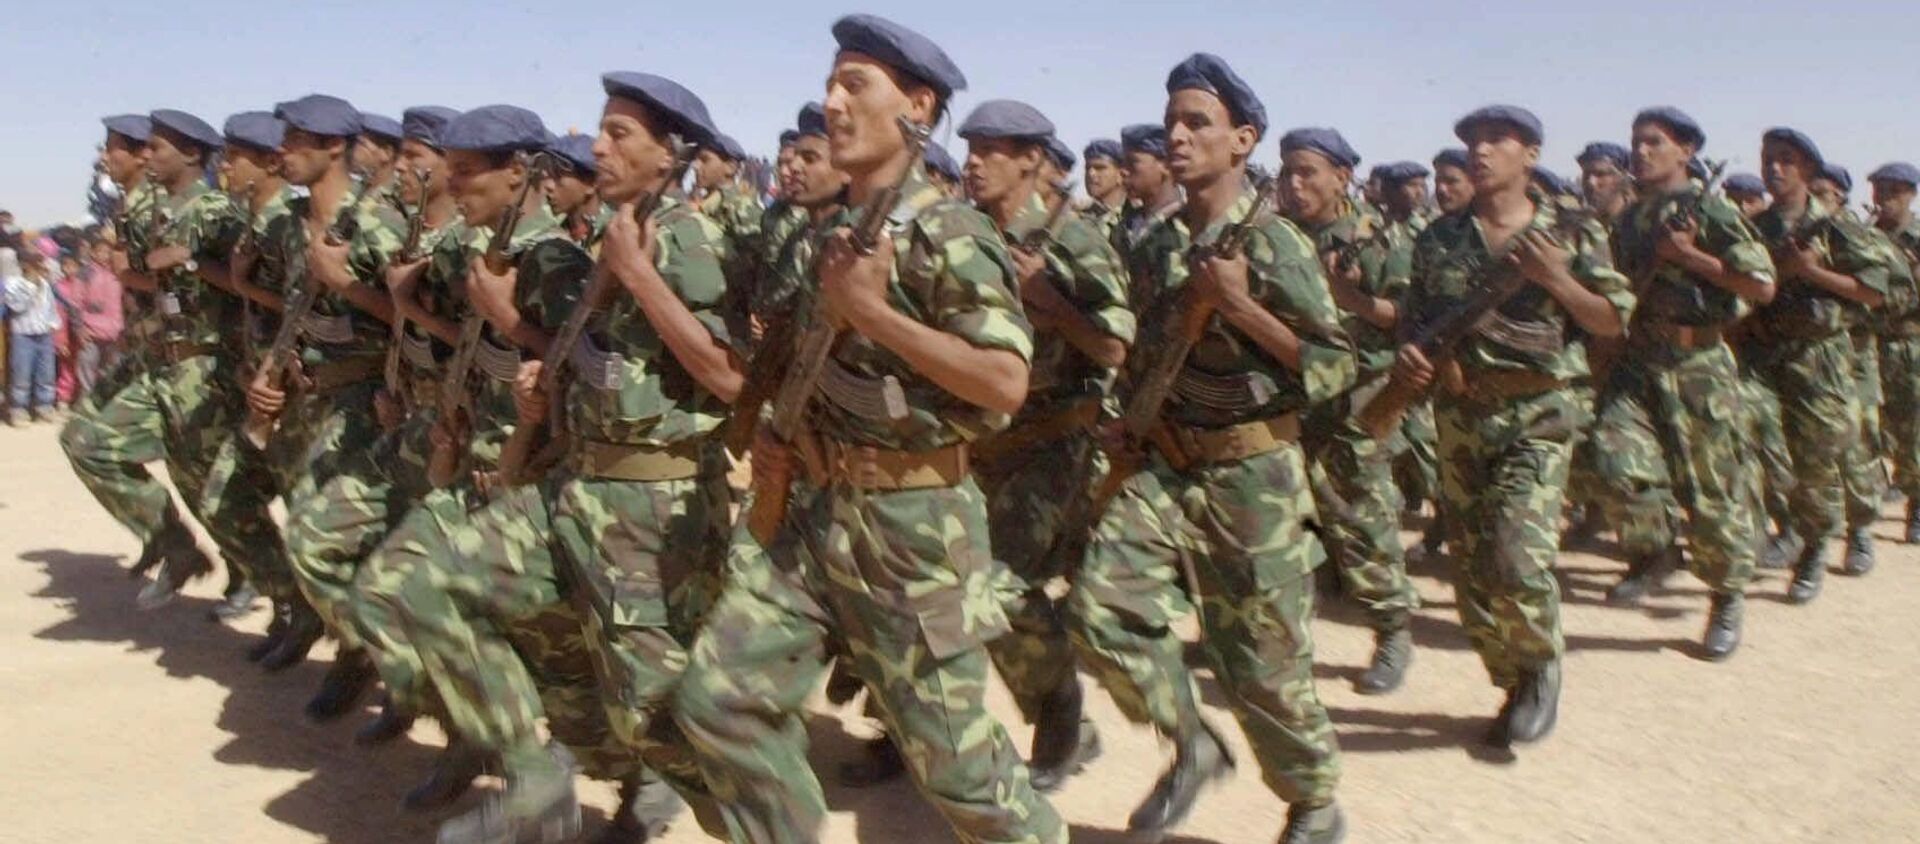 Unos soldados del Frente Polisario en 2001 (archivo) - Sputnik Mundo, 1920, 15.11.2020